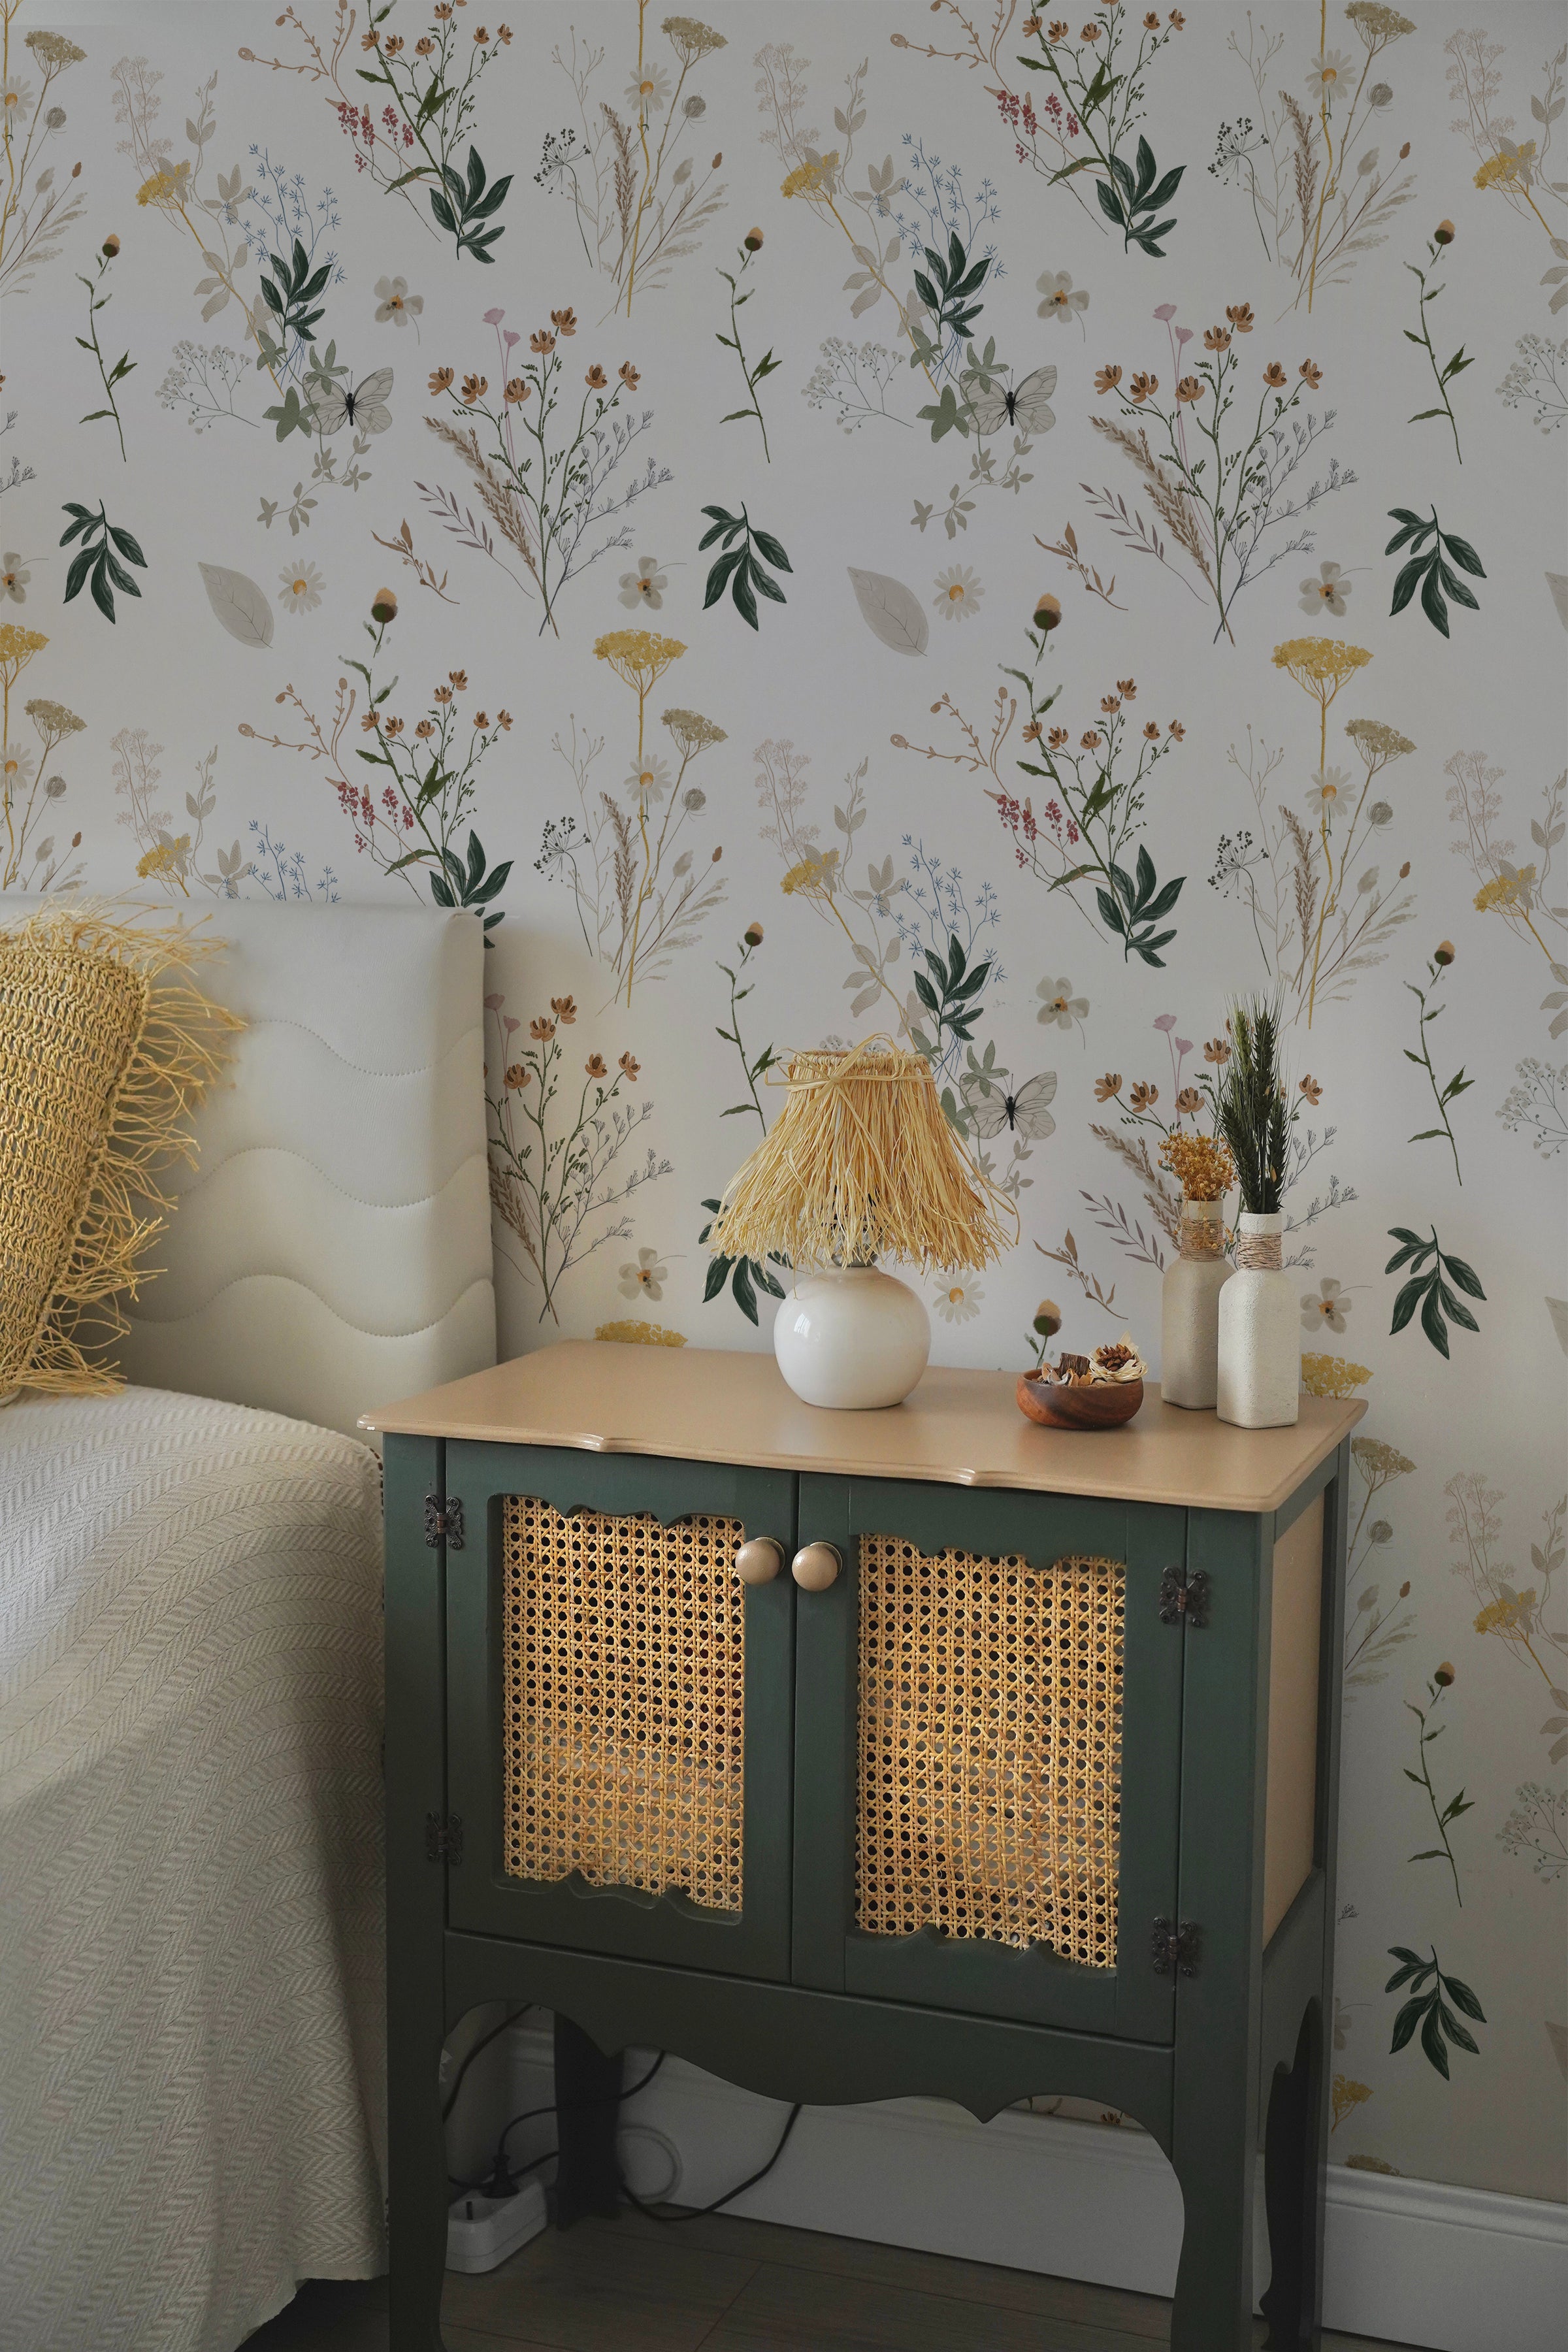 wallpaper, peel and stick wallpaper, Home decor, floral wallpaper, Aerie floral wallpaper, Multicolor wallpaper, bedroom wallpaper